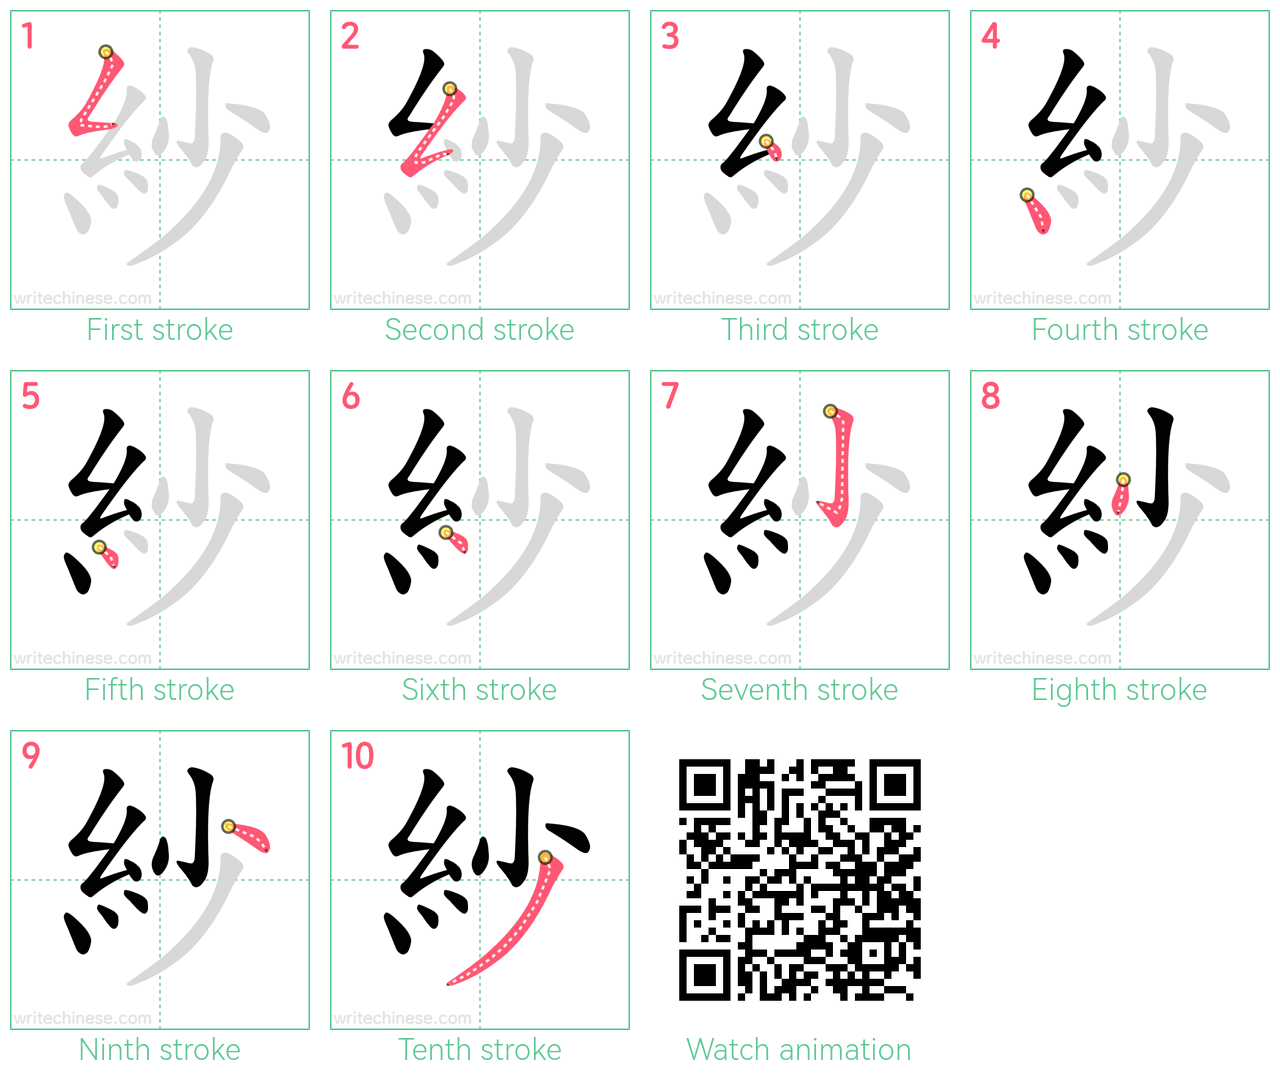 紗 step-by-step stroke order diagrams